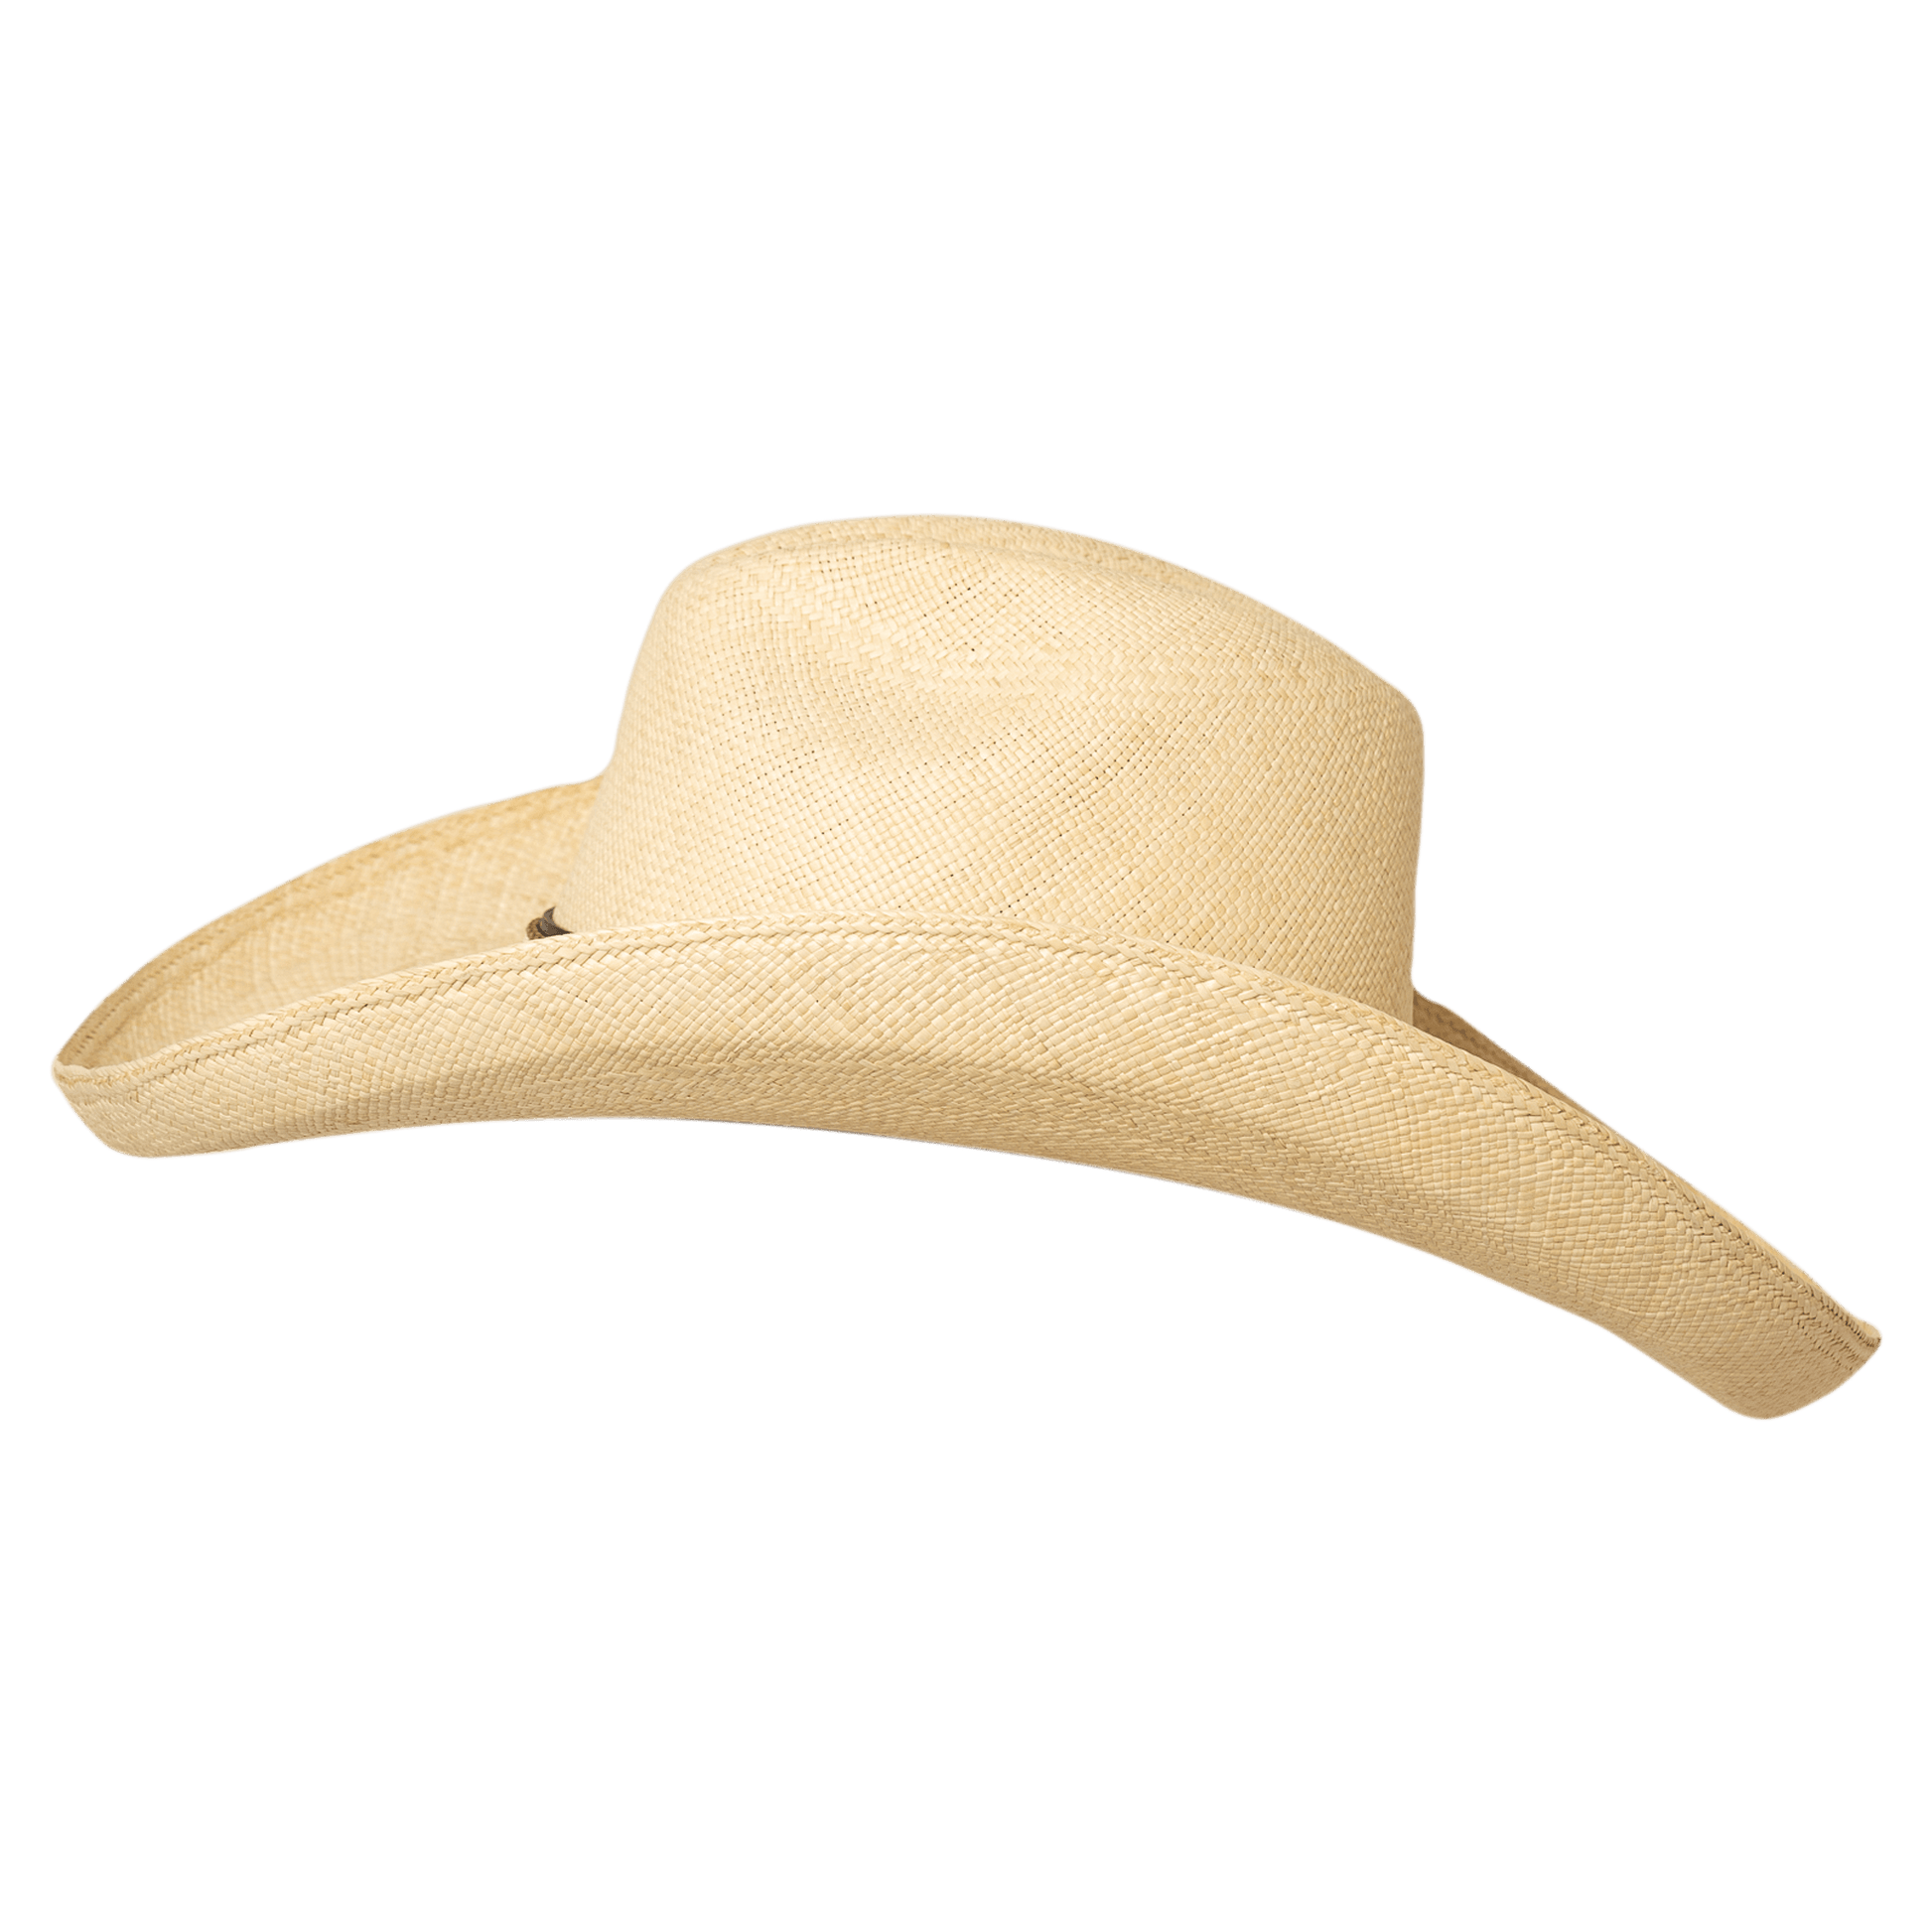     Sombrero ecuatoriano brio